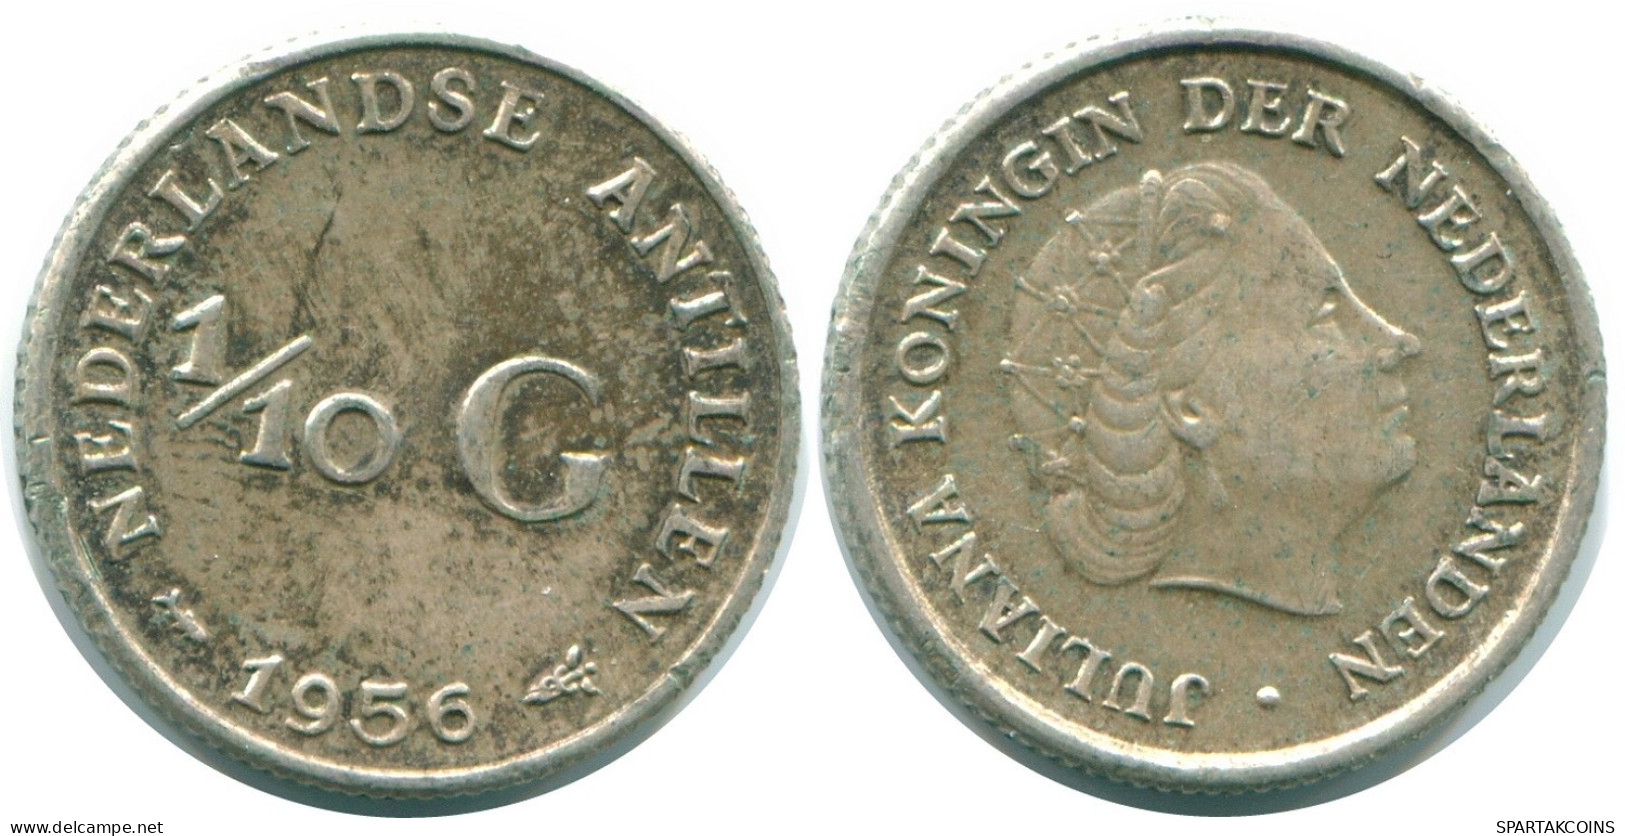 1/10 GULDEN 1956 NIEDERLÄNDISCHE ANTILLEN SILBER Koloniale Münze #NL12106.3.D.A - Antilles Néerlandaises